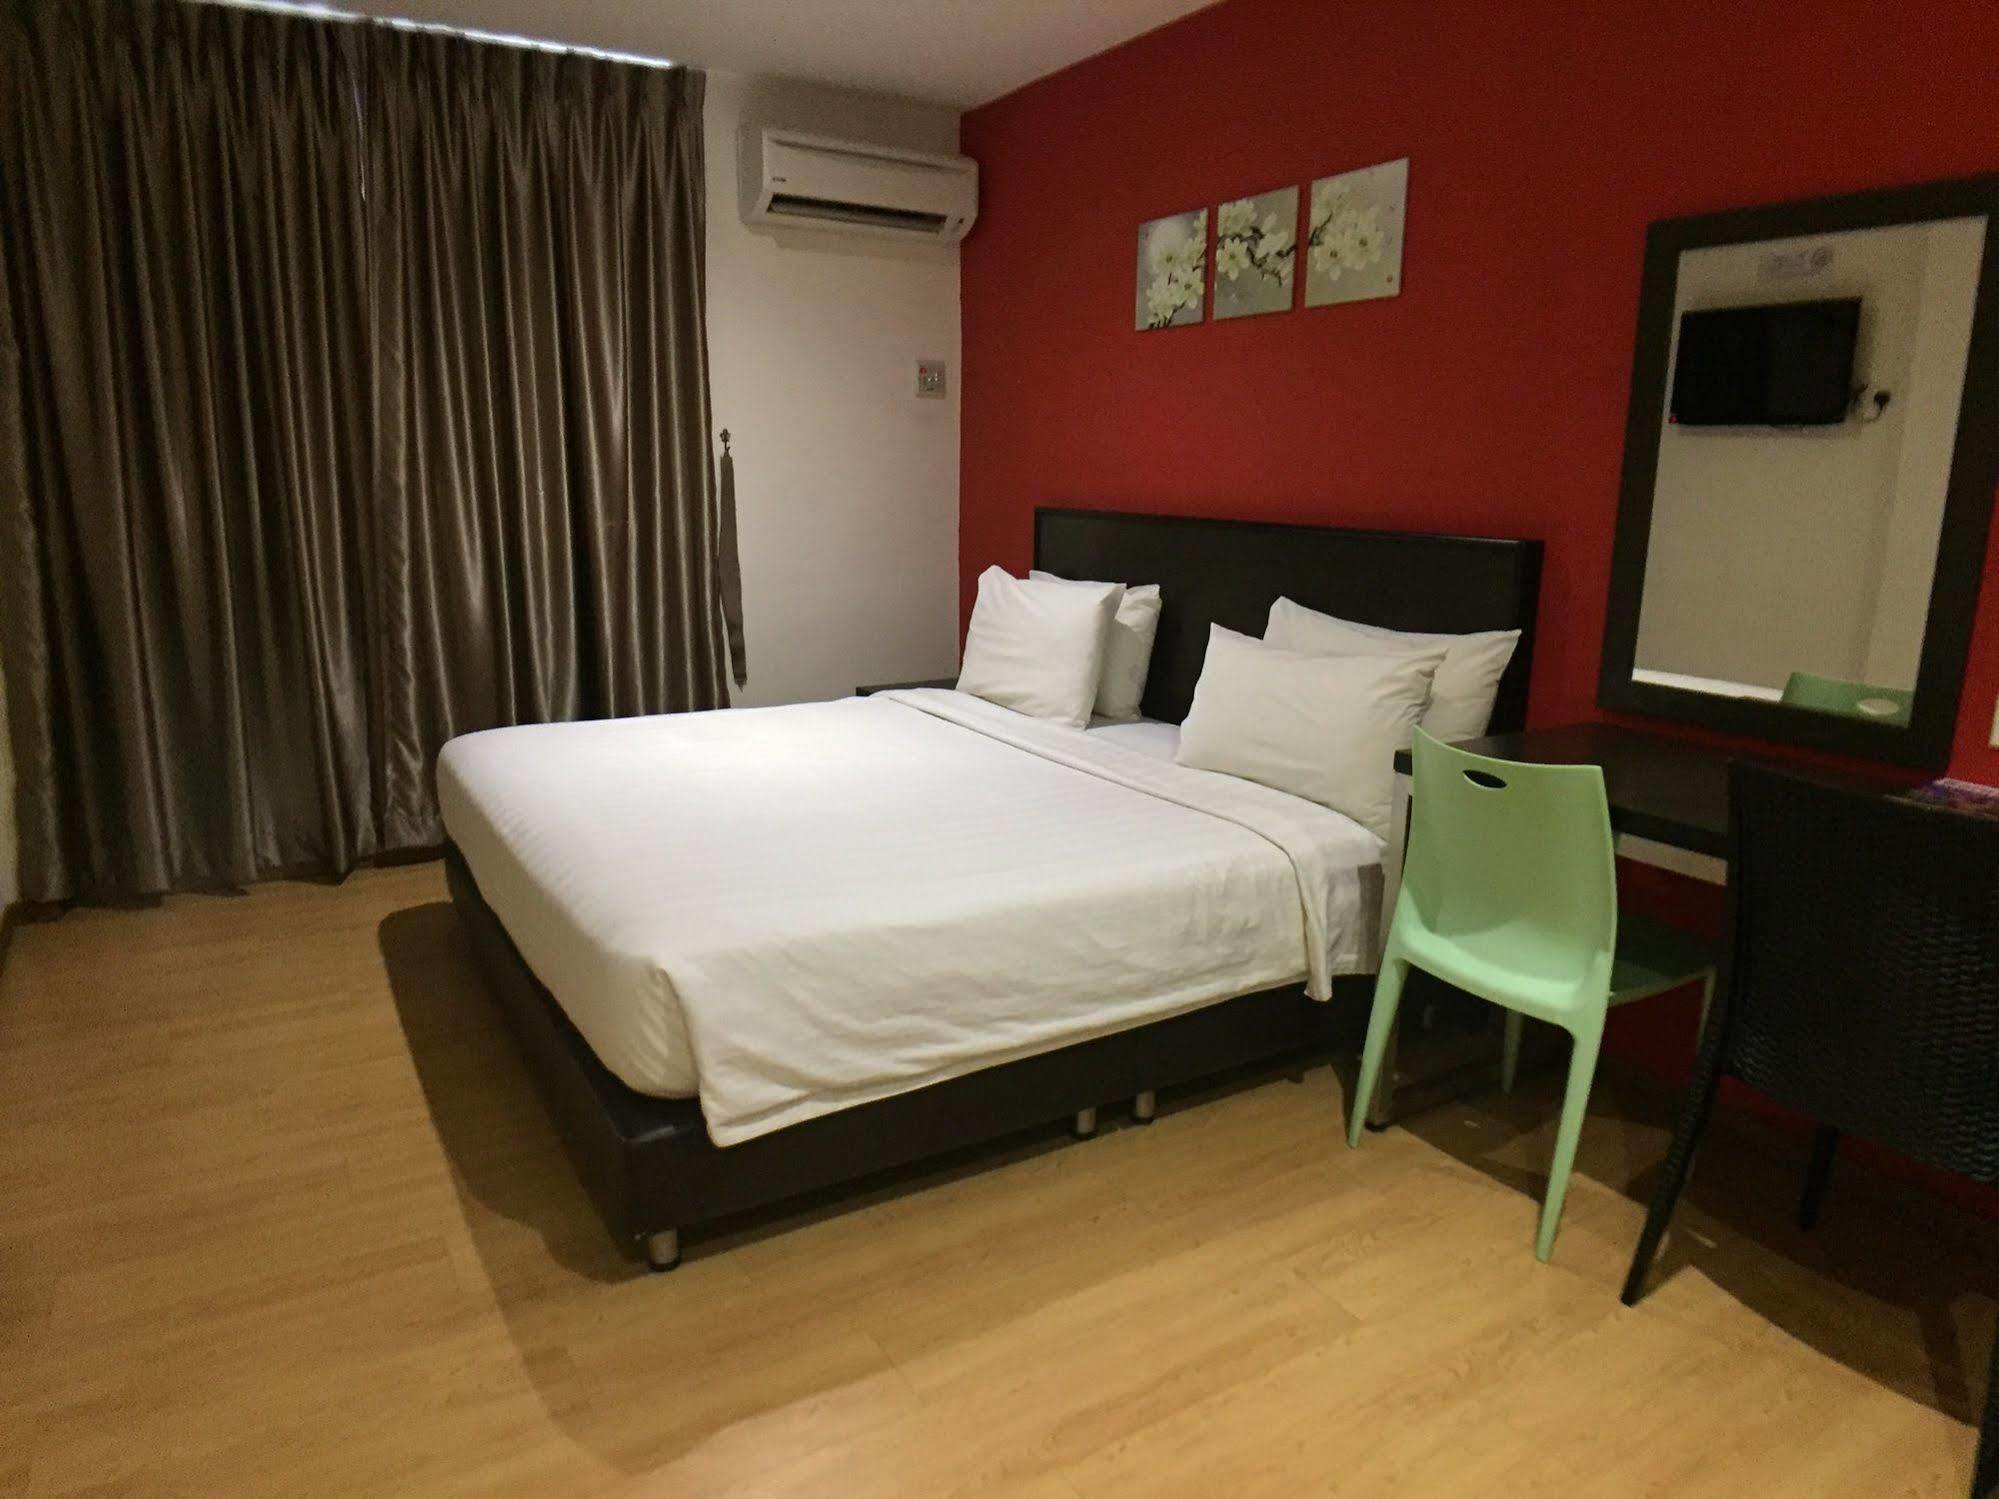 Padungan Hotel Kuching Zewnętrze zdjęcie